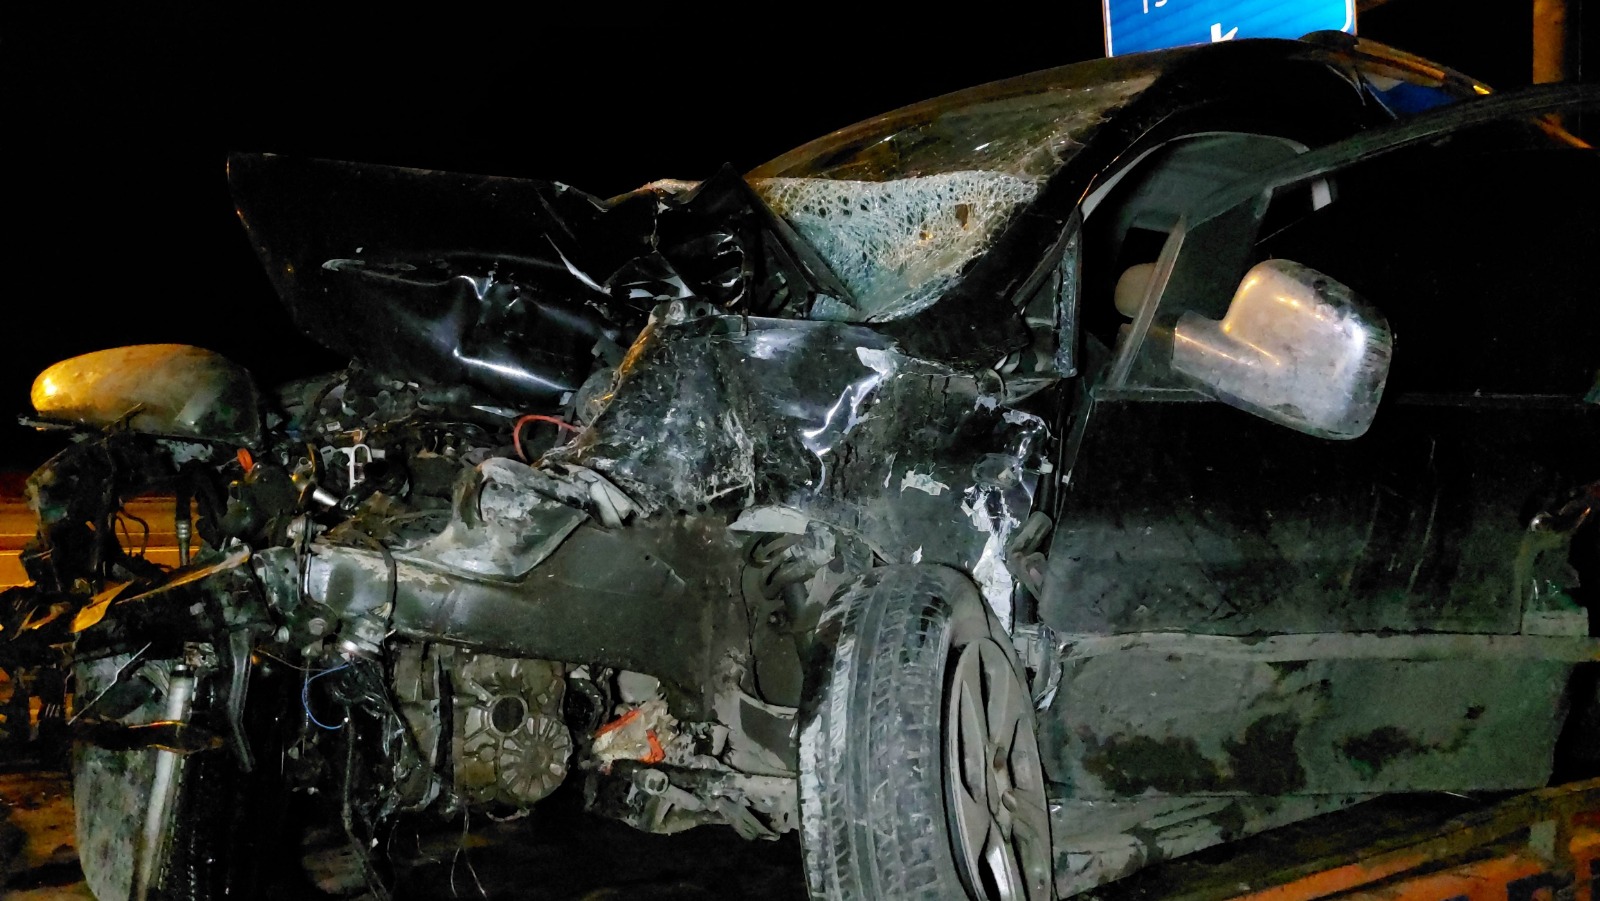  Samsun'un Tekkeköy İlçesi7nde meydana gelen trafik kazasında şoför, mucize bir şekilde hayata tutundu